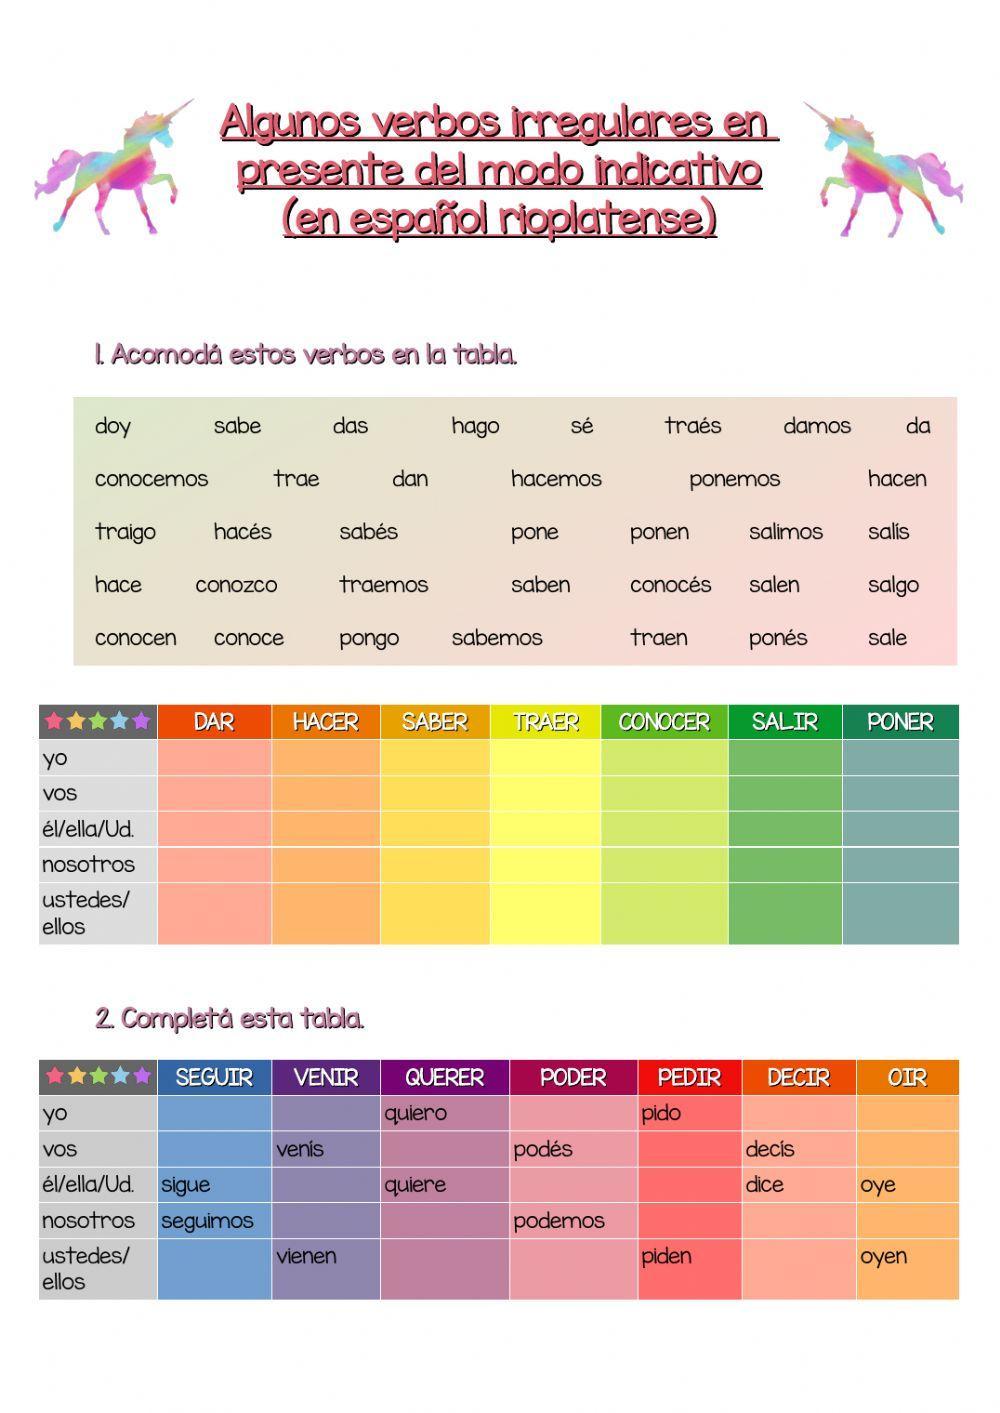 Algunos verbos irregulares en español rioplatense